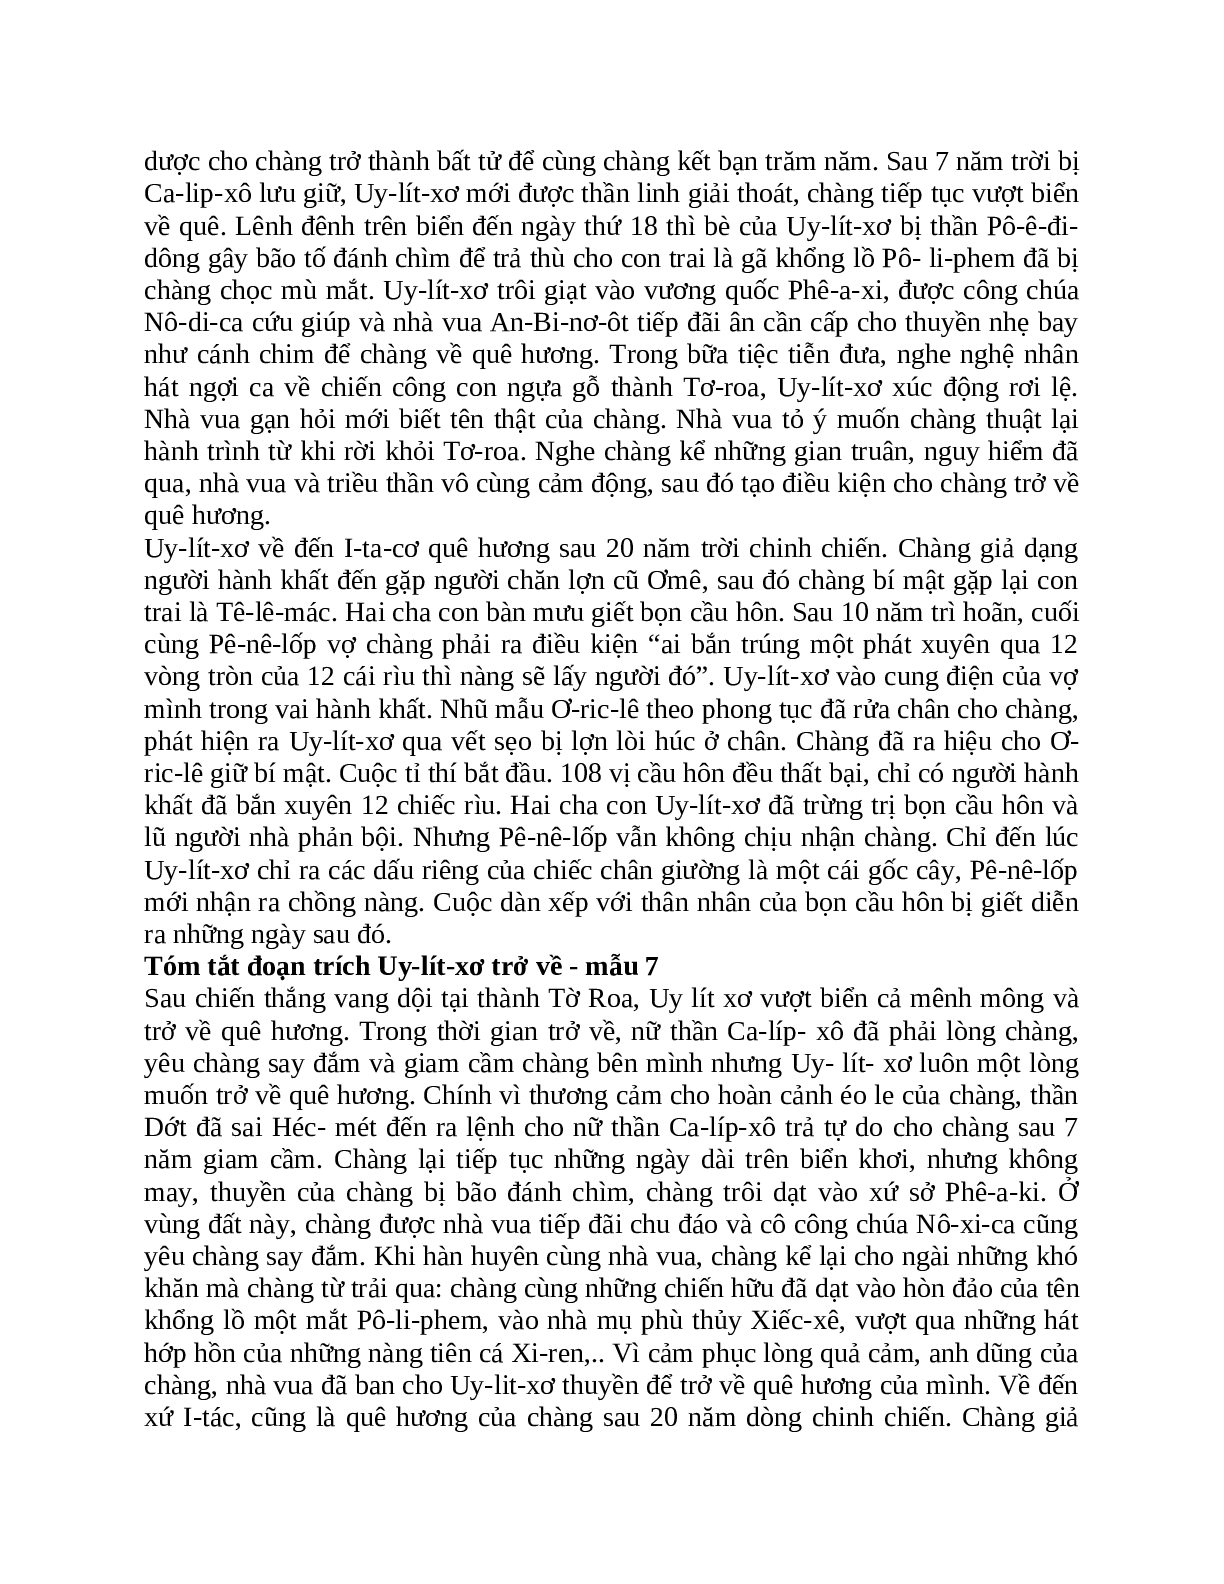 Tóm tắt Uy-lít-xơ trở về nhanh nhất, ngắn ngọn (trang 4)